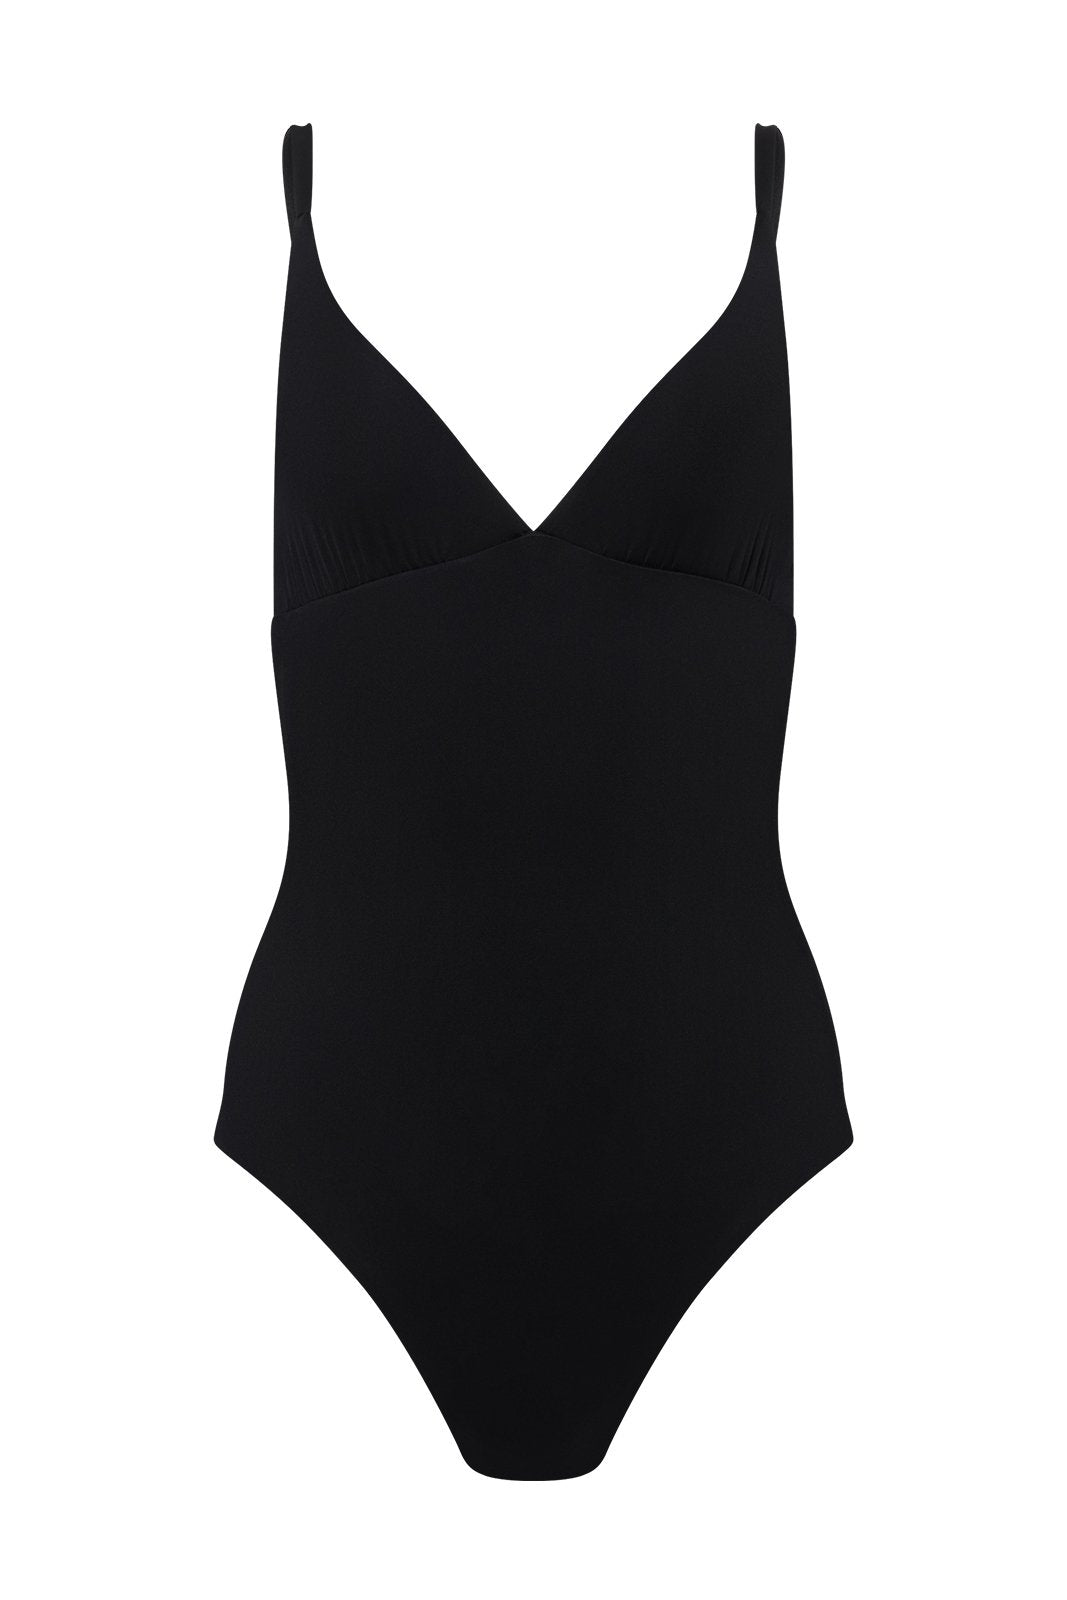 Catherine Swimsuit in Black by Maison De Mode - Cassea Swim